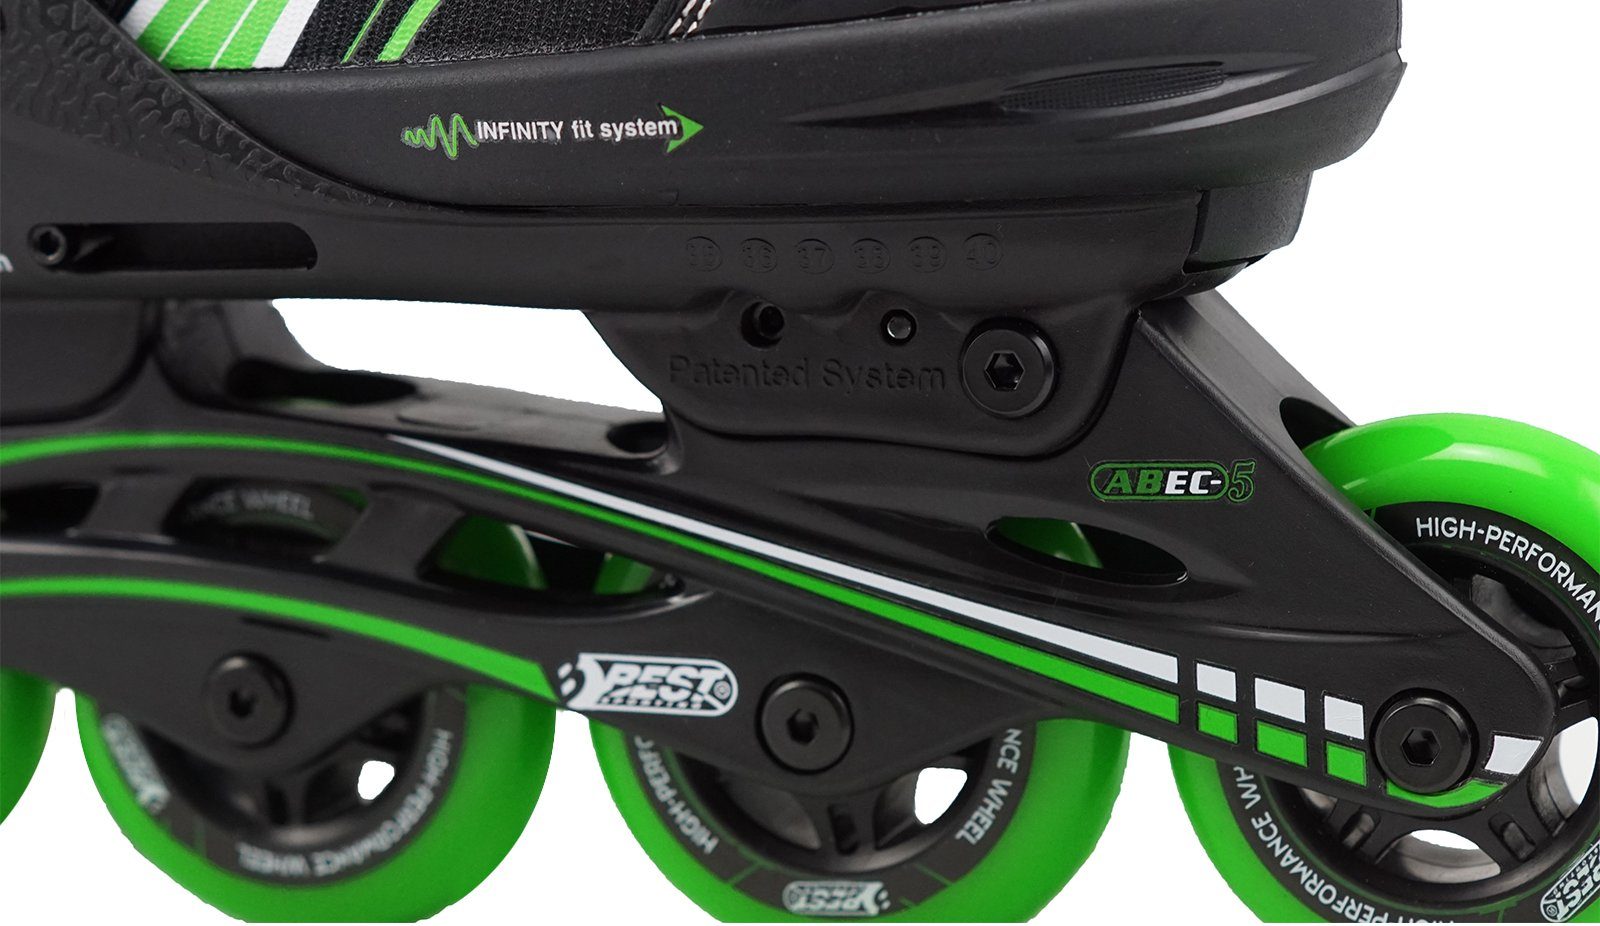 grün Inlineskates Best 5 Skates Inline verstellbar, Größe Sporting Carbon ABEC